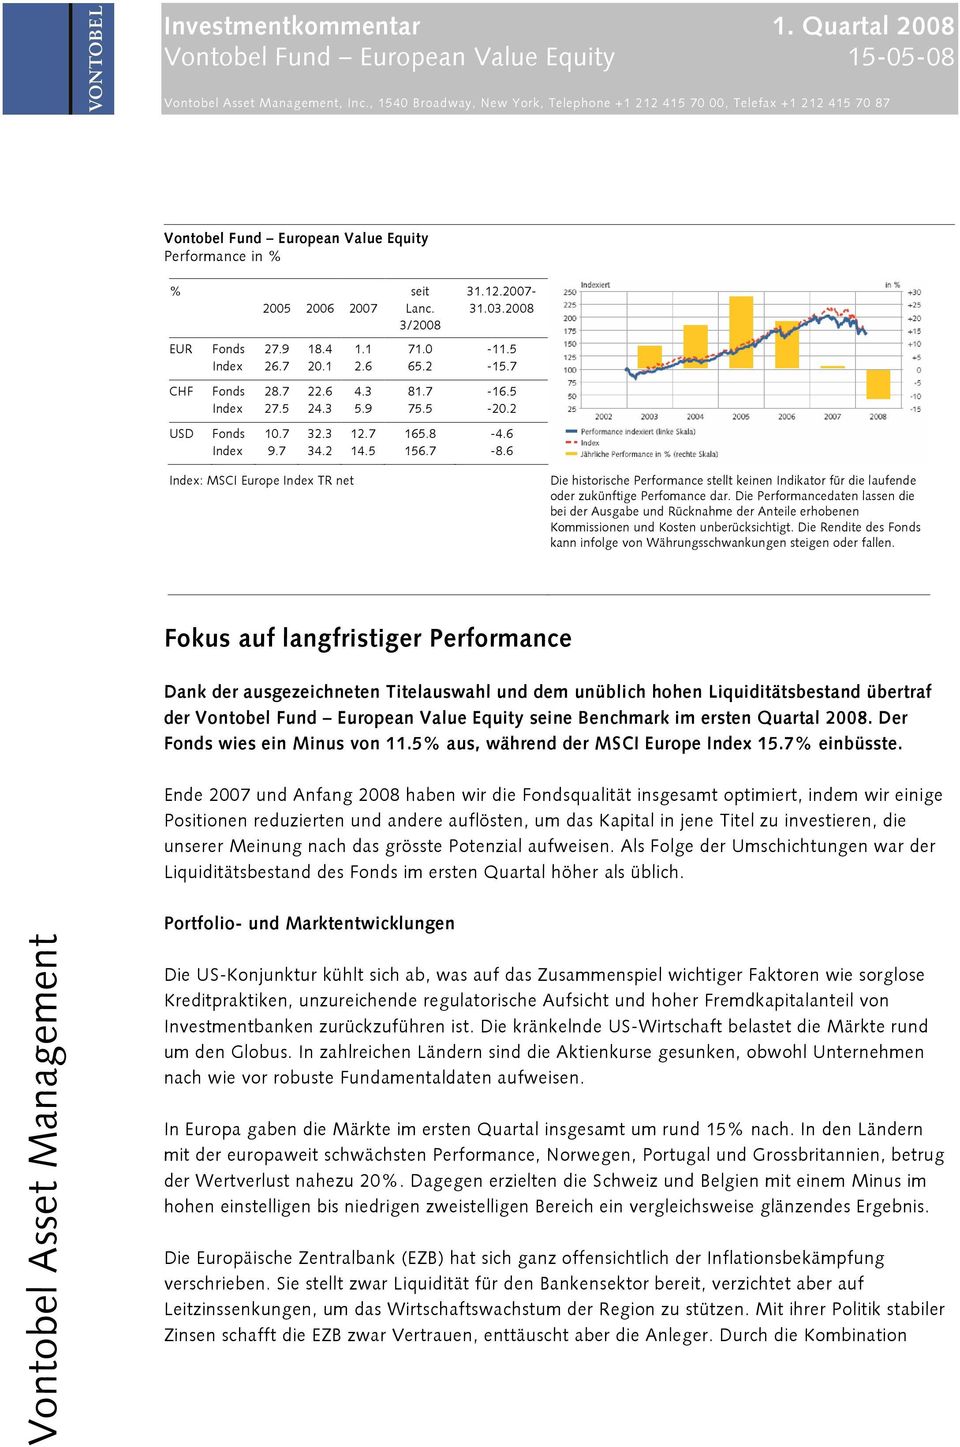 7-8.6 Index: MSCI Europe Index TR net Die historische Performance stellt keinen Indikator für die laufende oder zukünftige Perfomance dar.